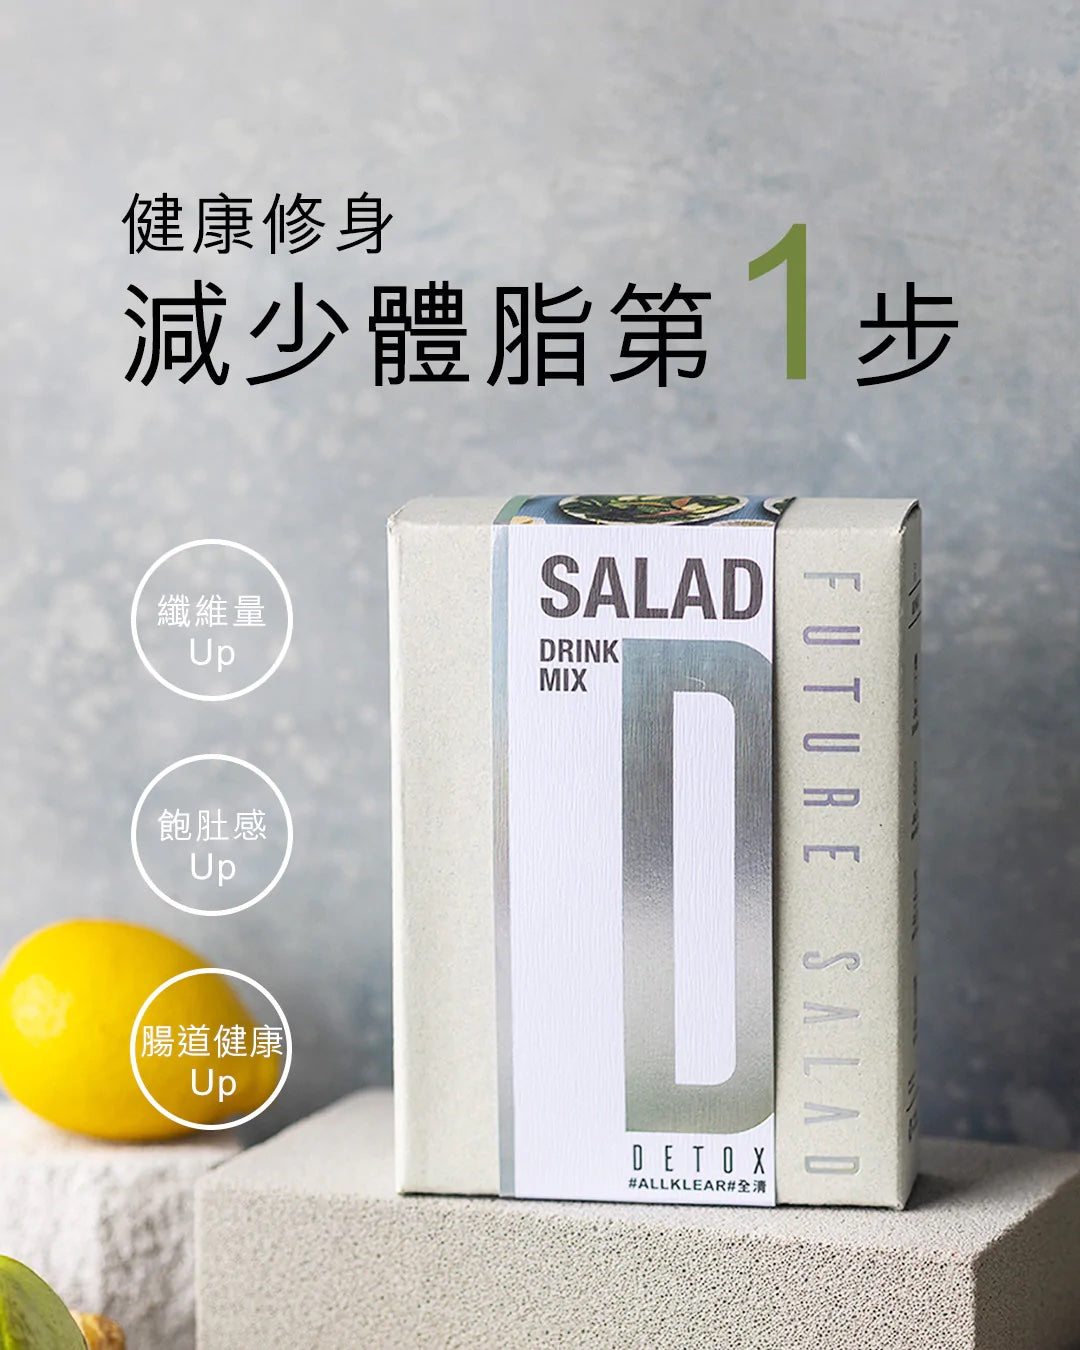 高纖新沙律飲 Detox Salad Drink Mix 30包環保裝 Eco Pack